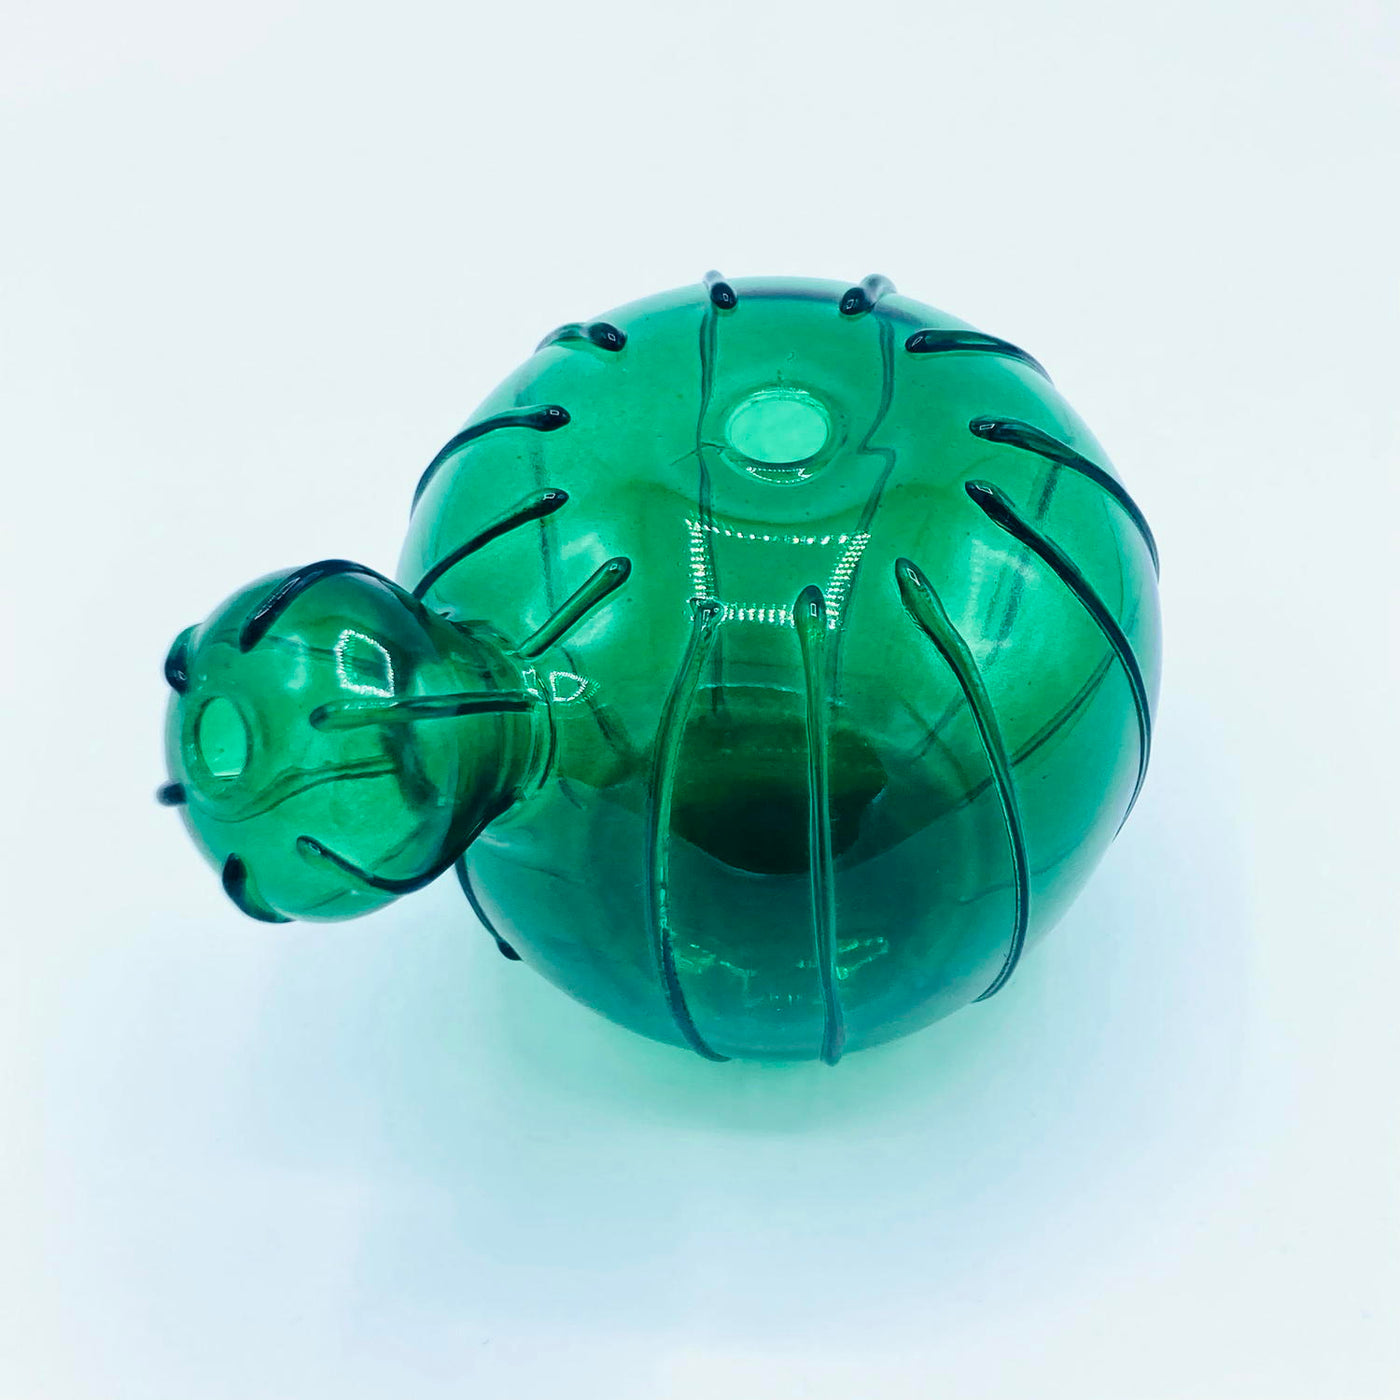 Quirky Cactus Vase Emerald